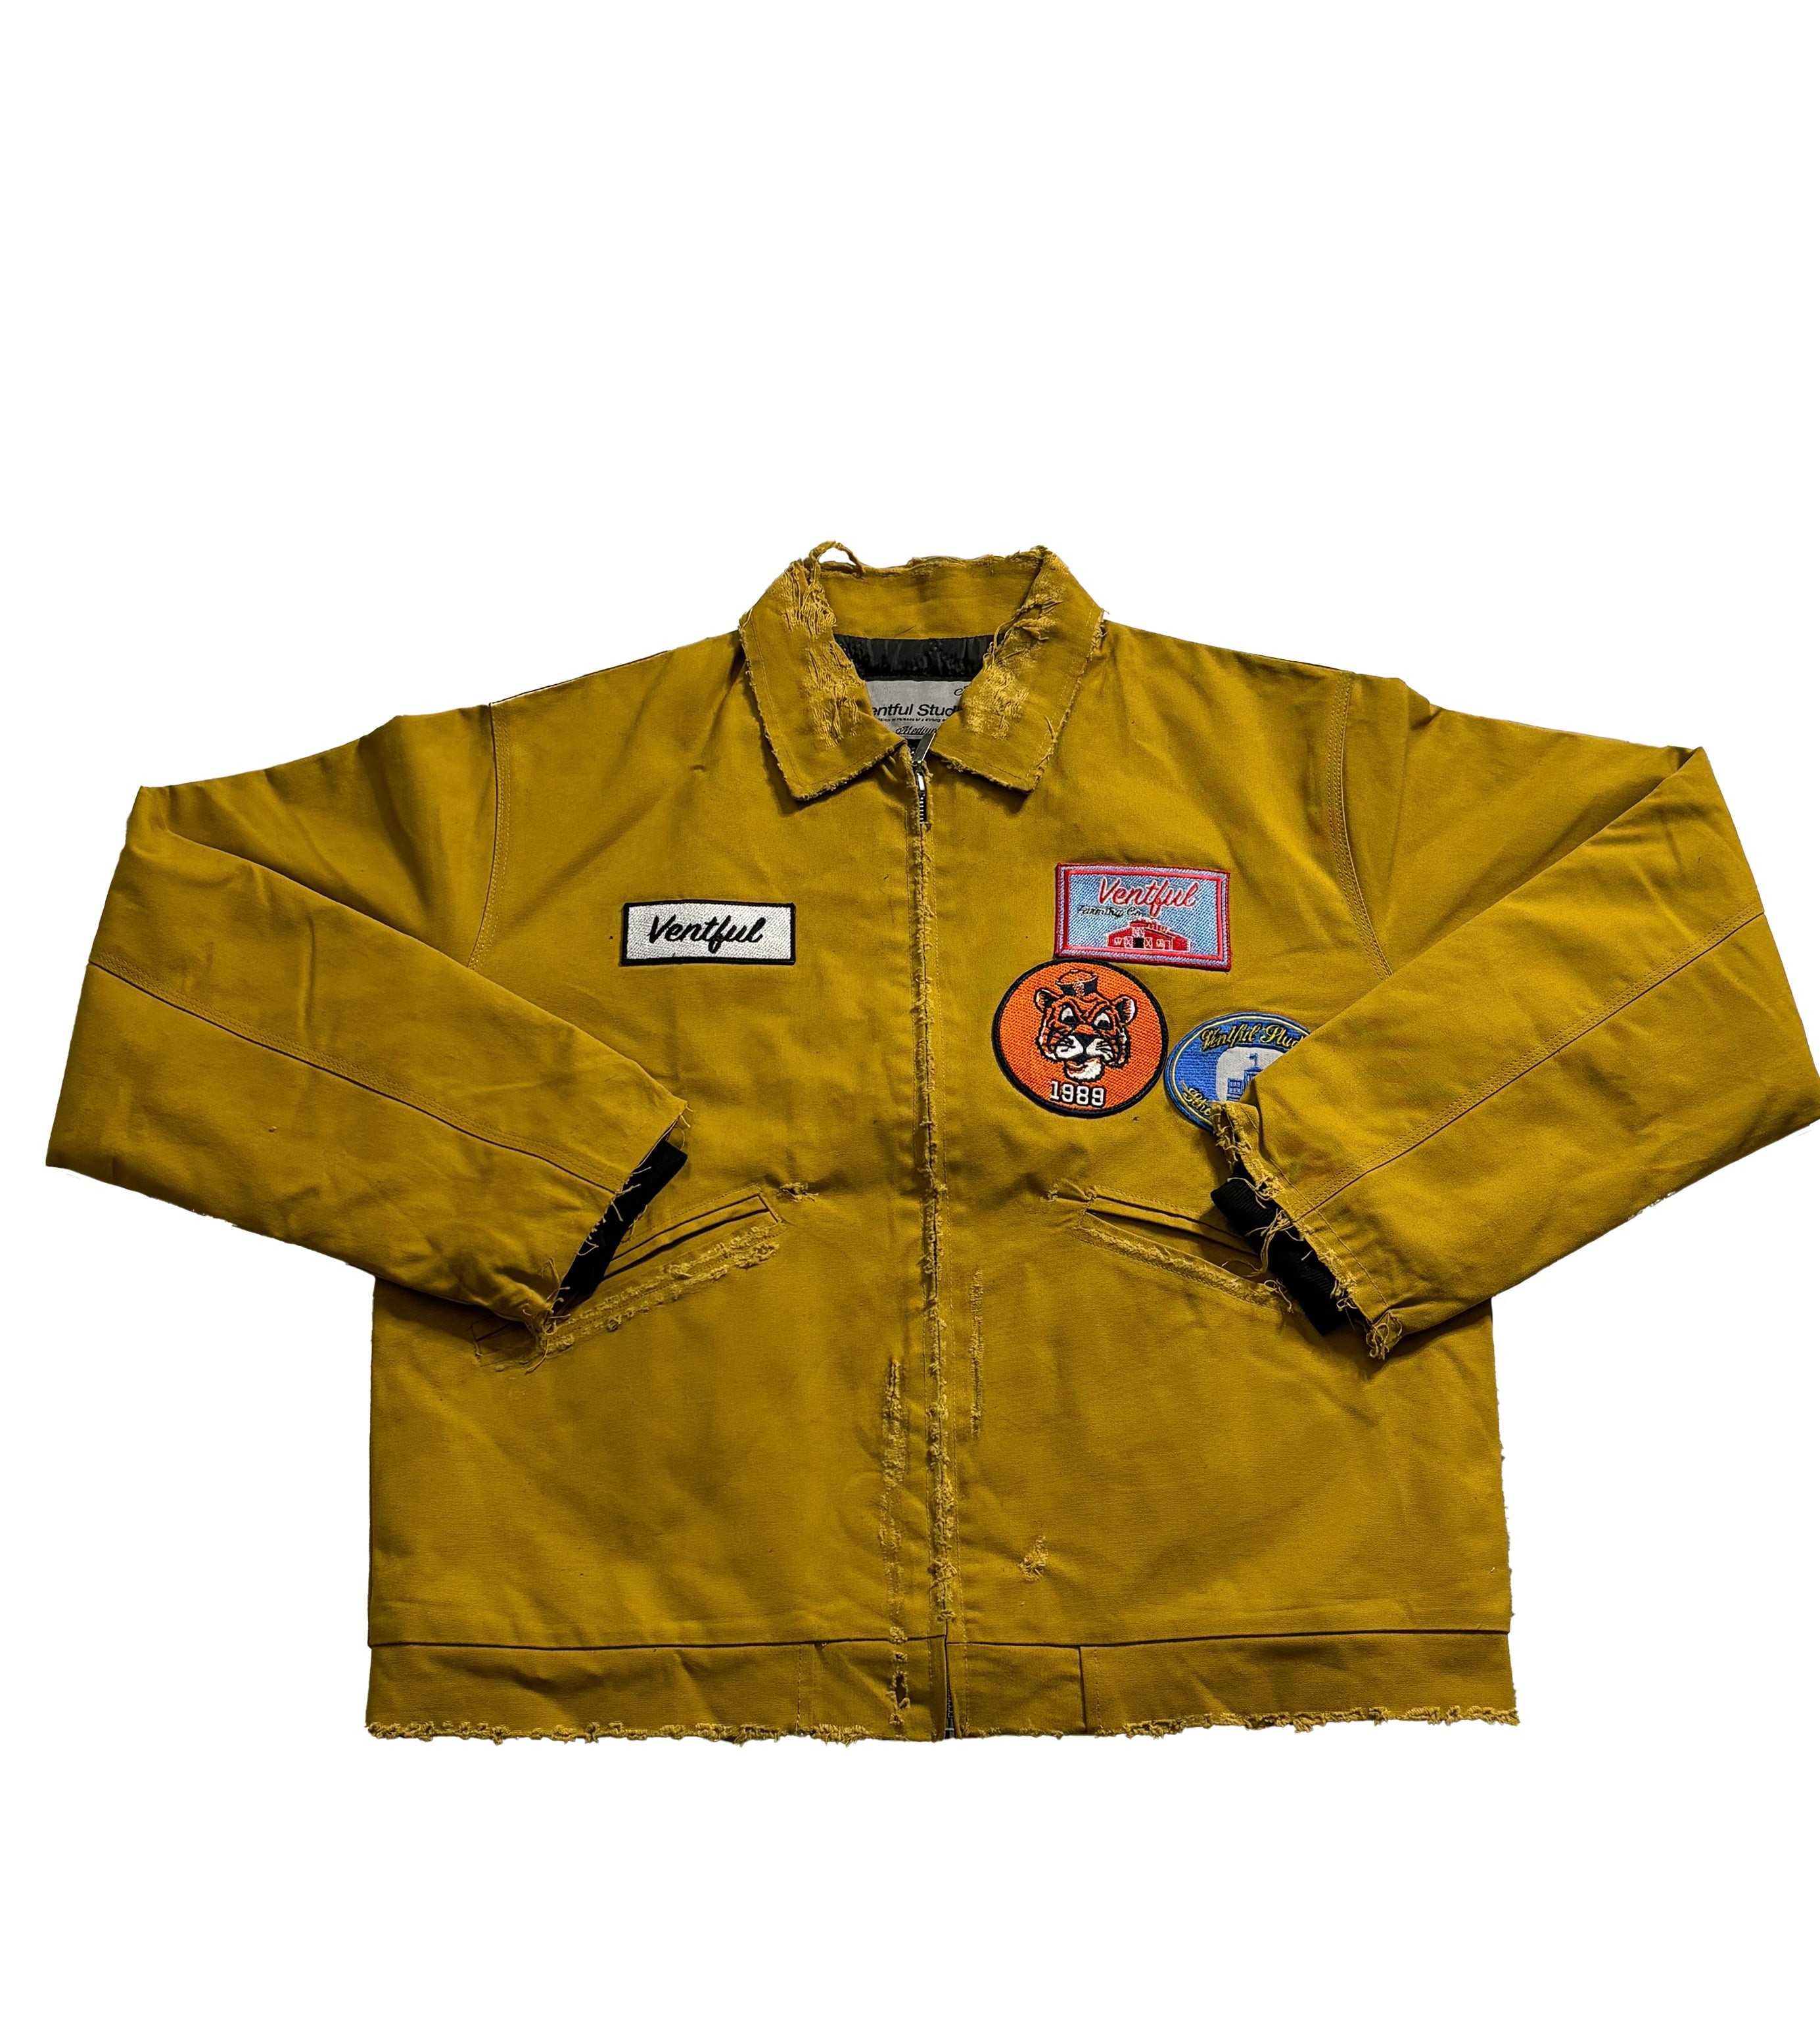 Ventful Golden Brown Jacket